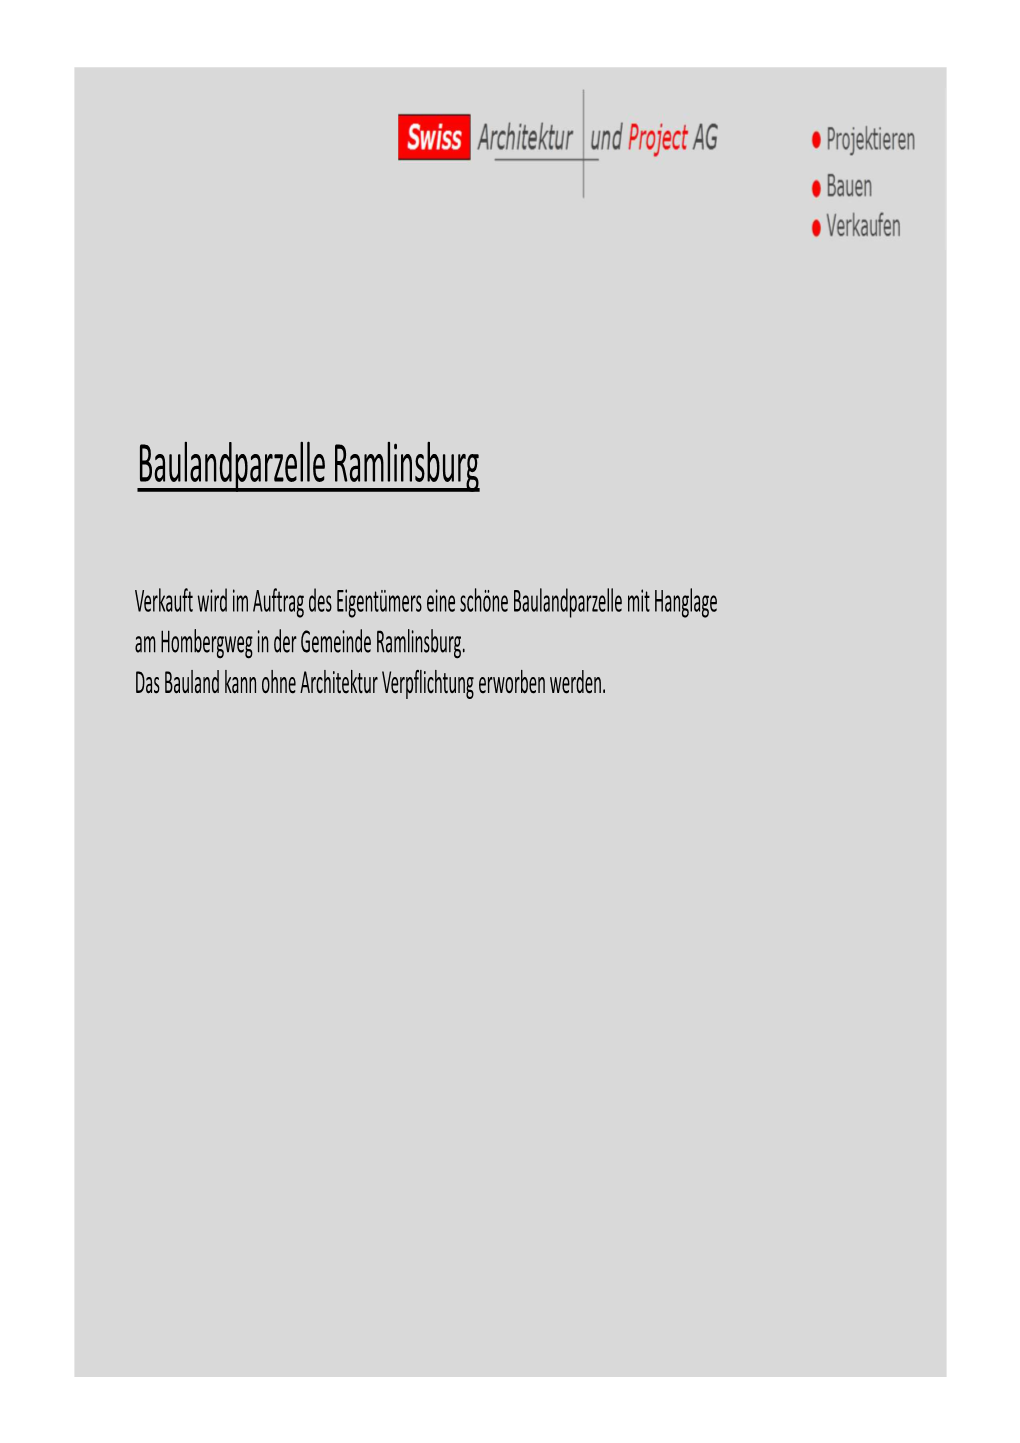 Dossier Baulandparzelle Ramlinsburg